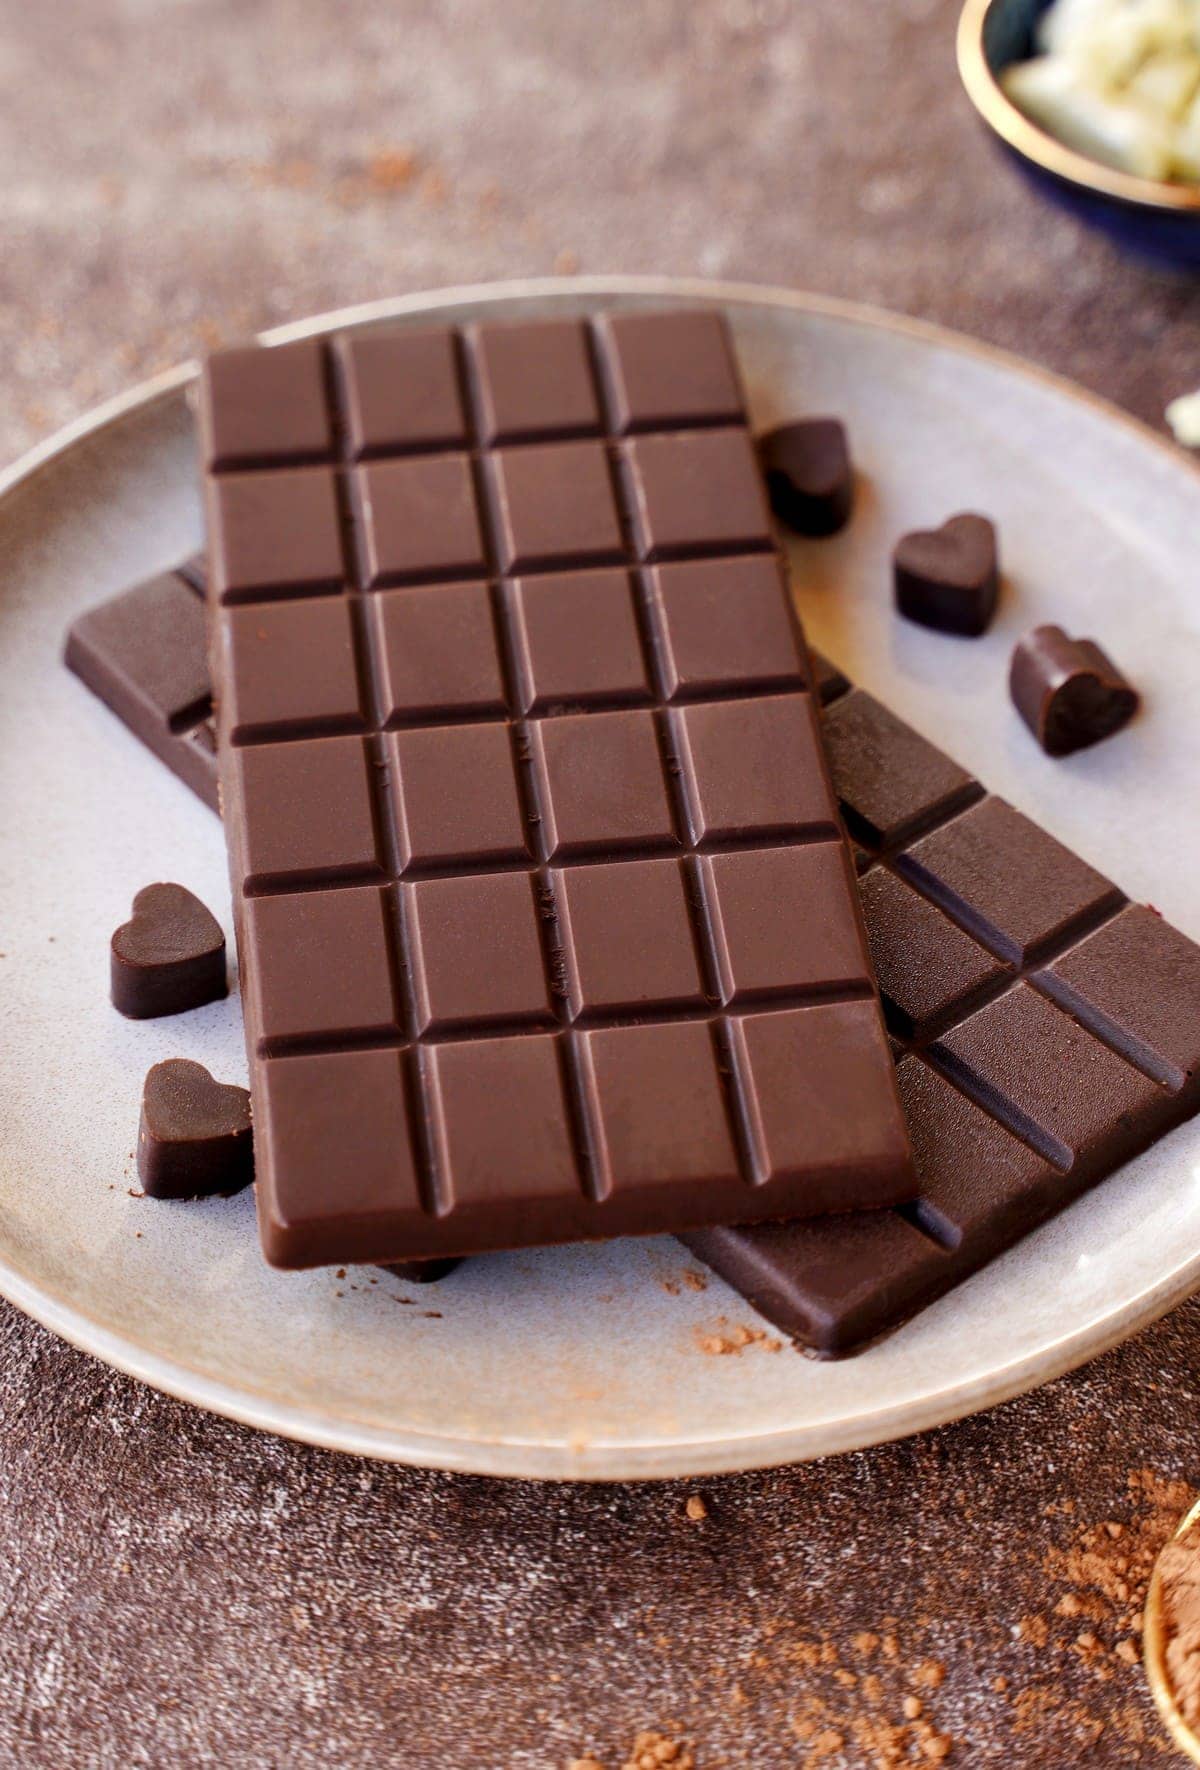 Schokolade selber machen: 2 Schokoladentafeln auf Teller